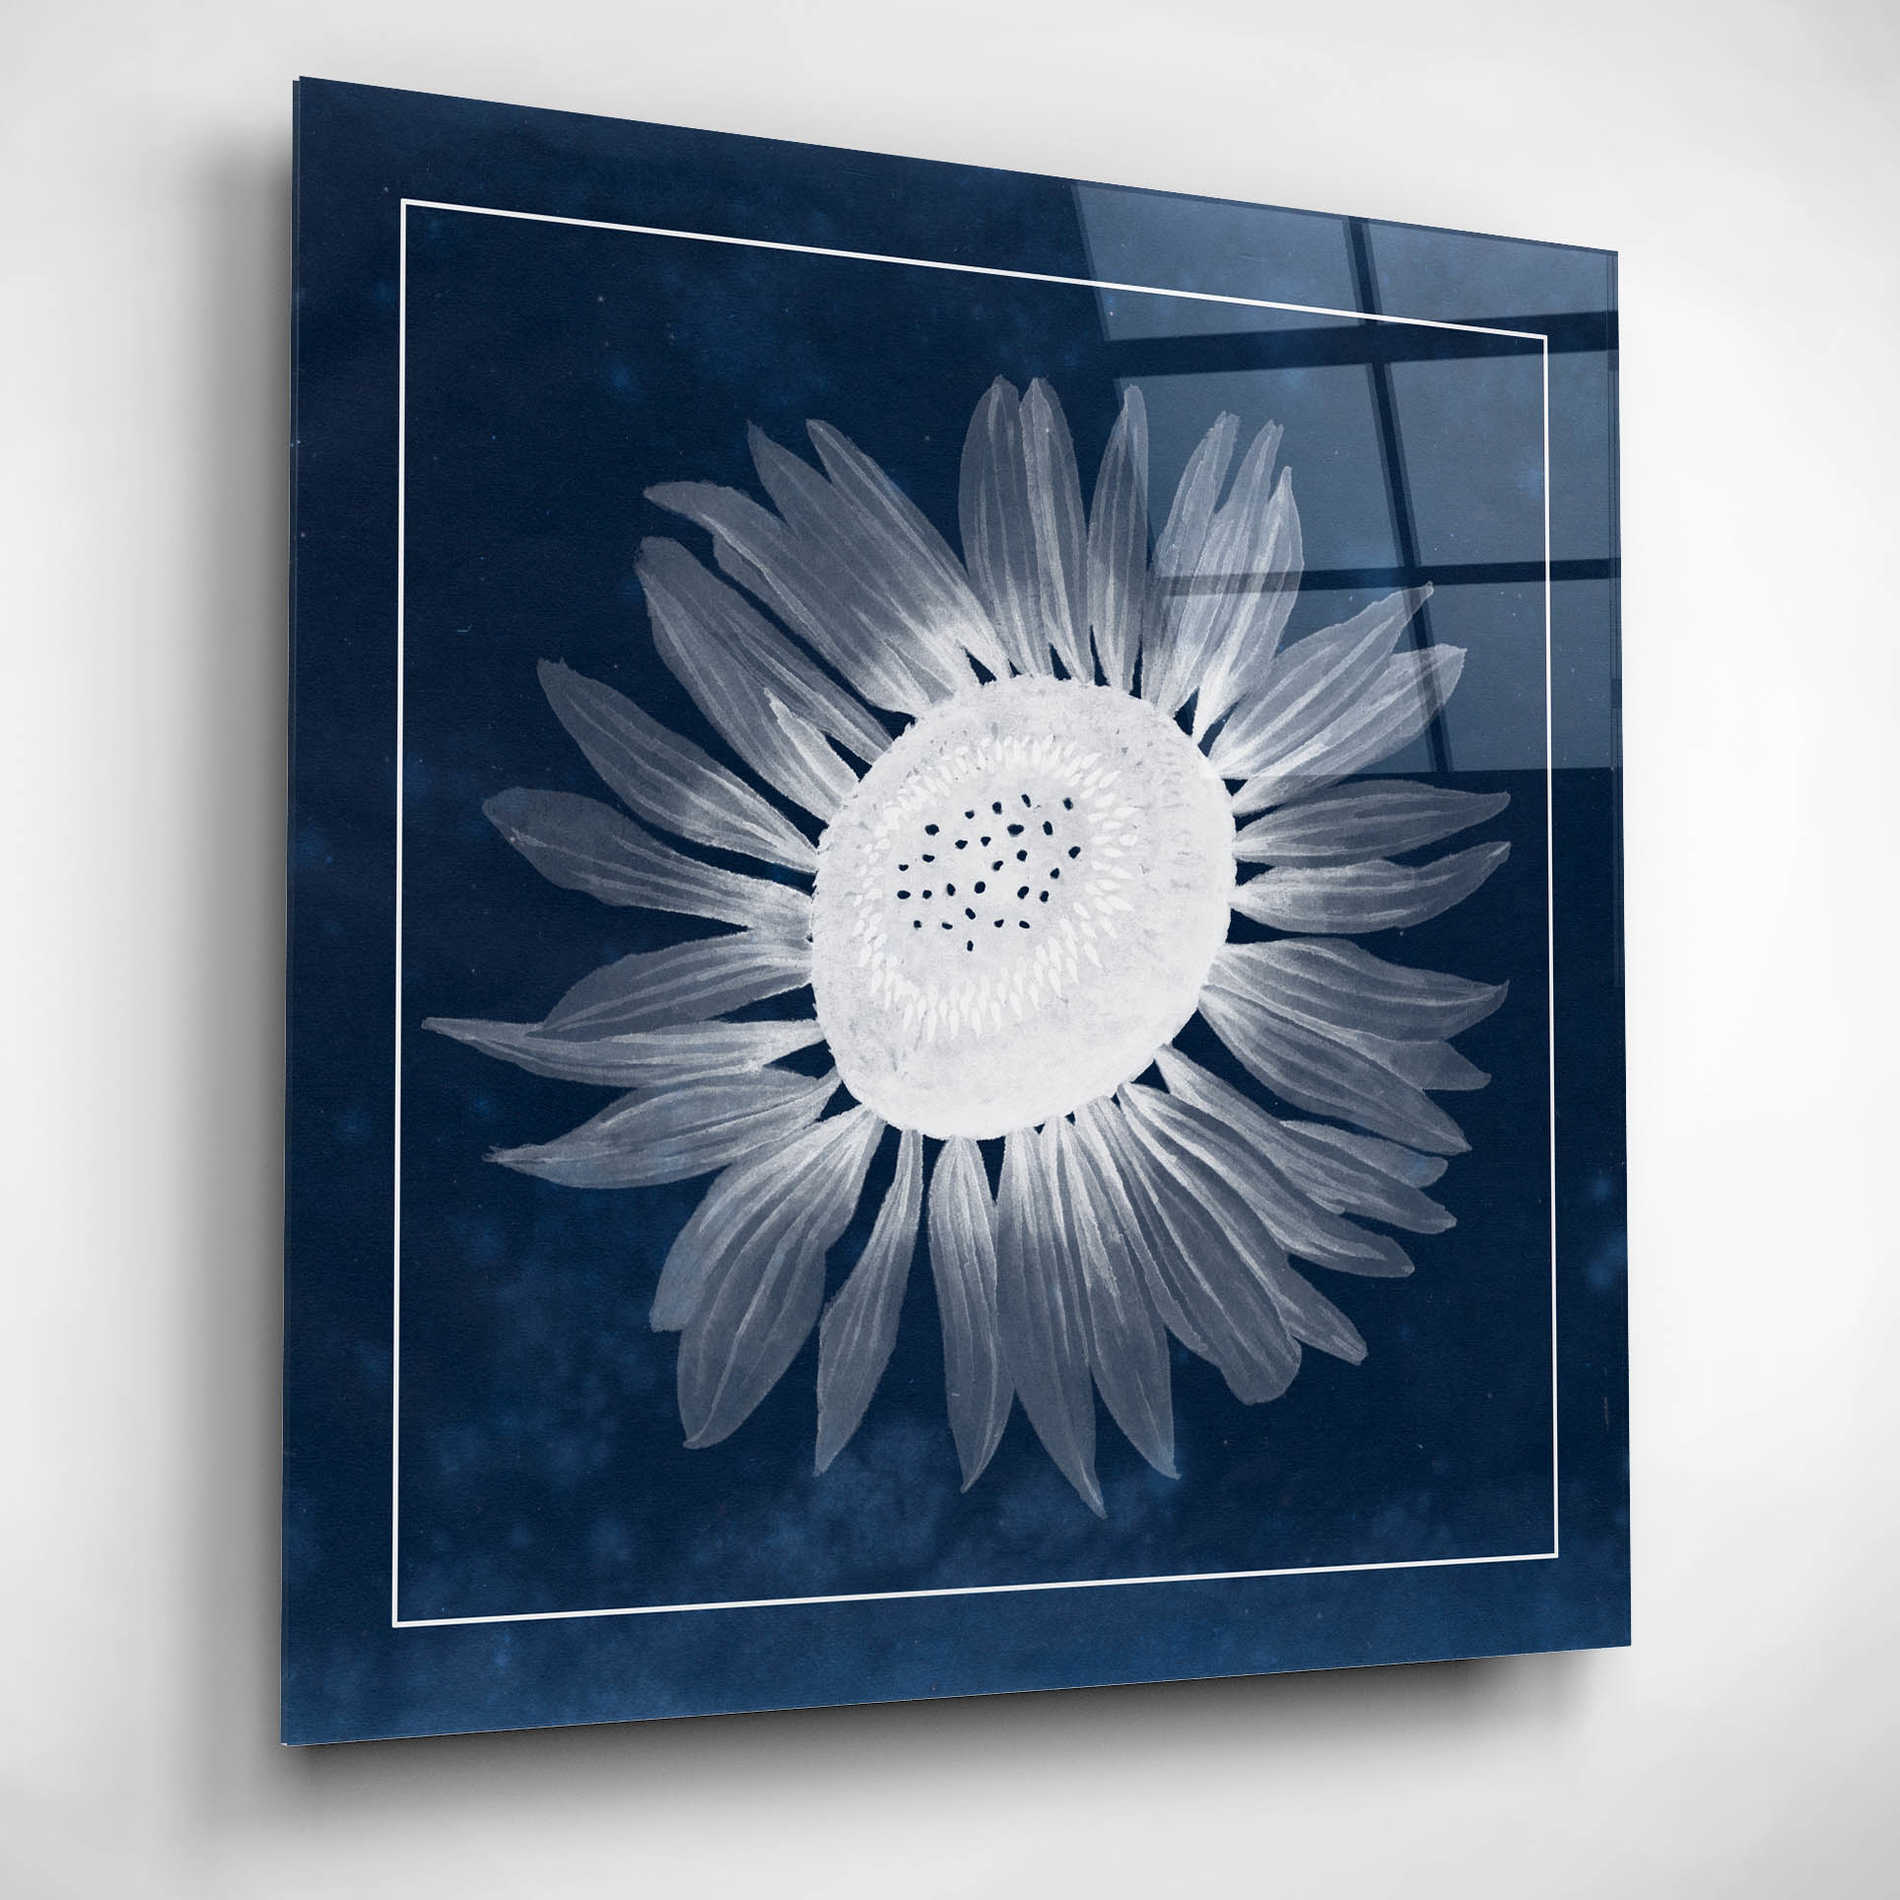 Epic Art 'Moon Flower II' by Grace Popp, Acrylic Wall Glass,12x12